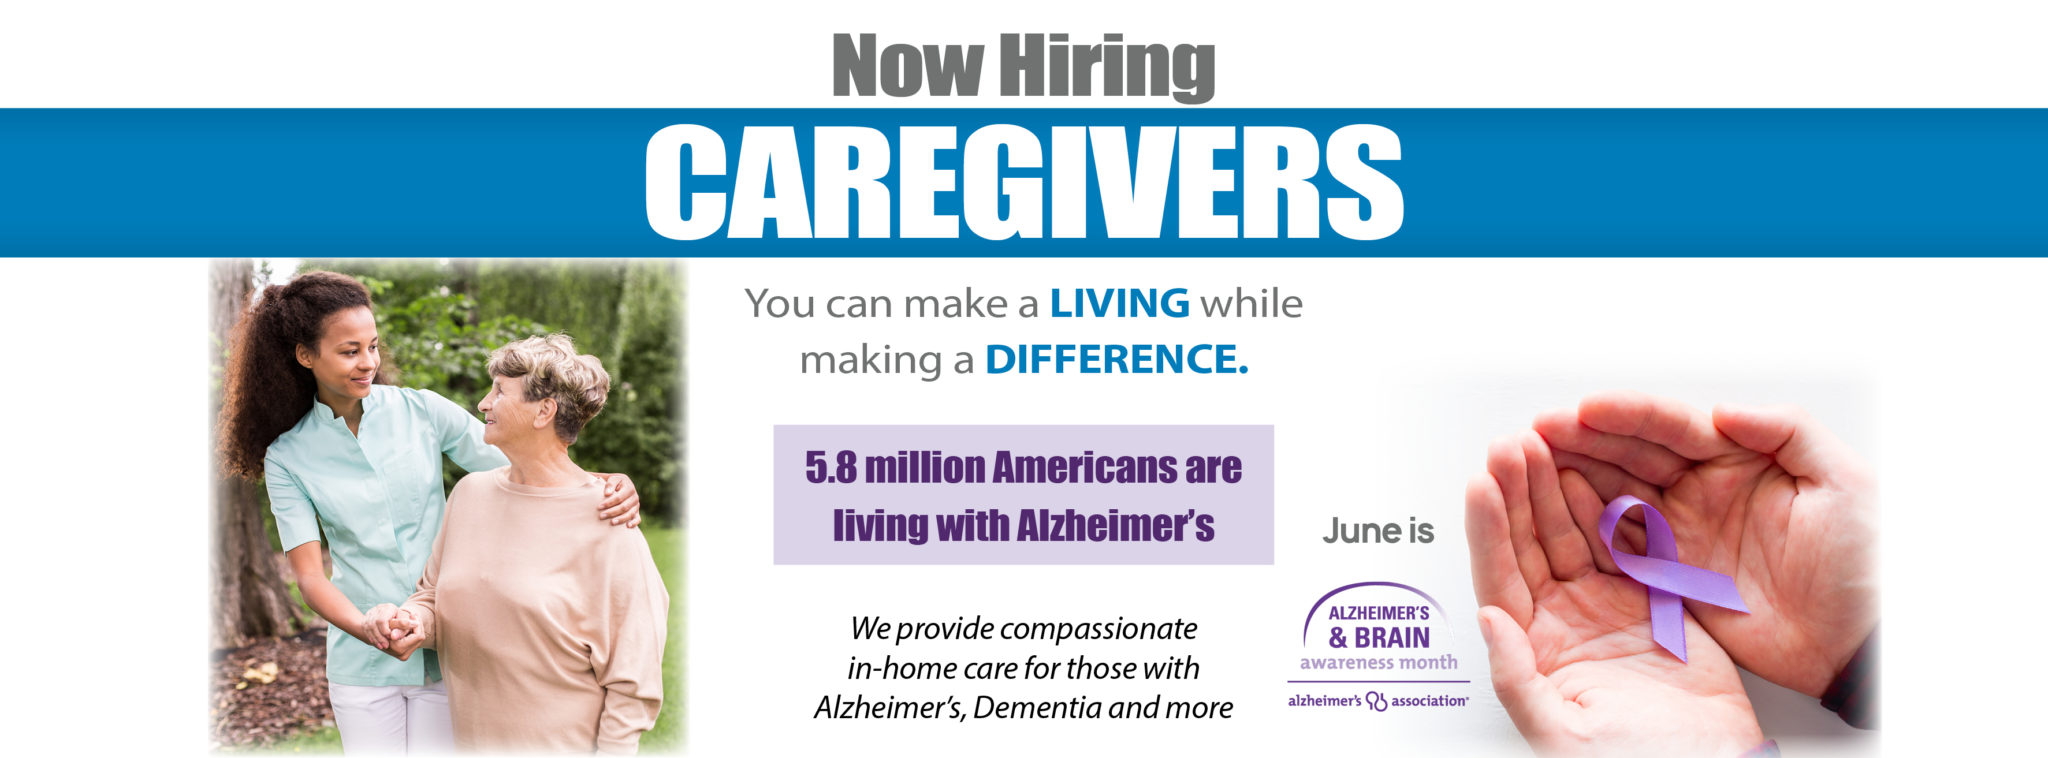 Caregiver Jobs in Winnetka, IL